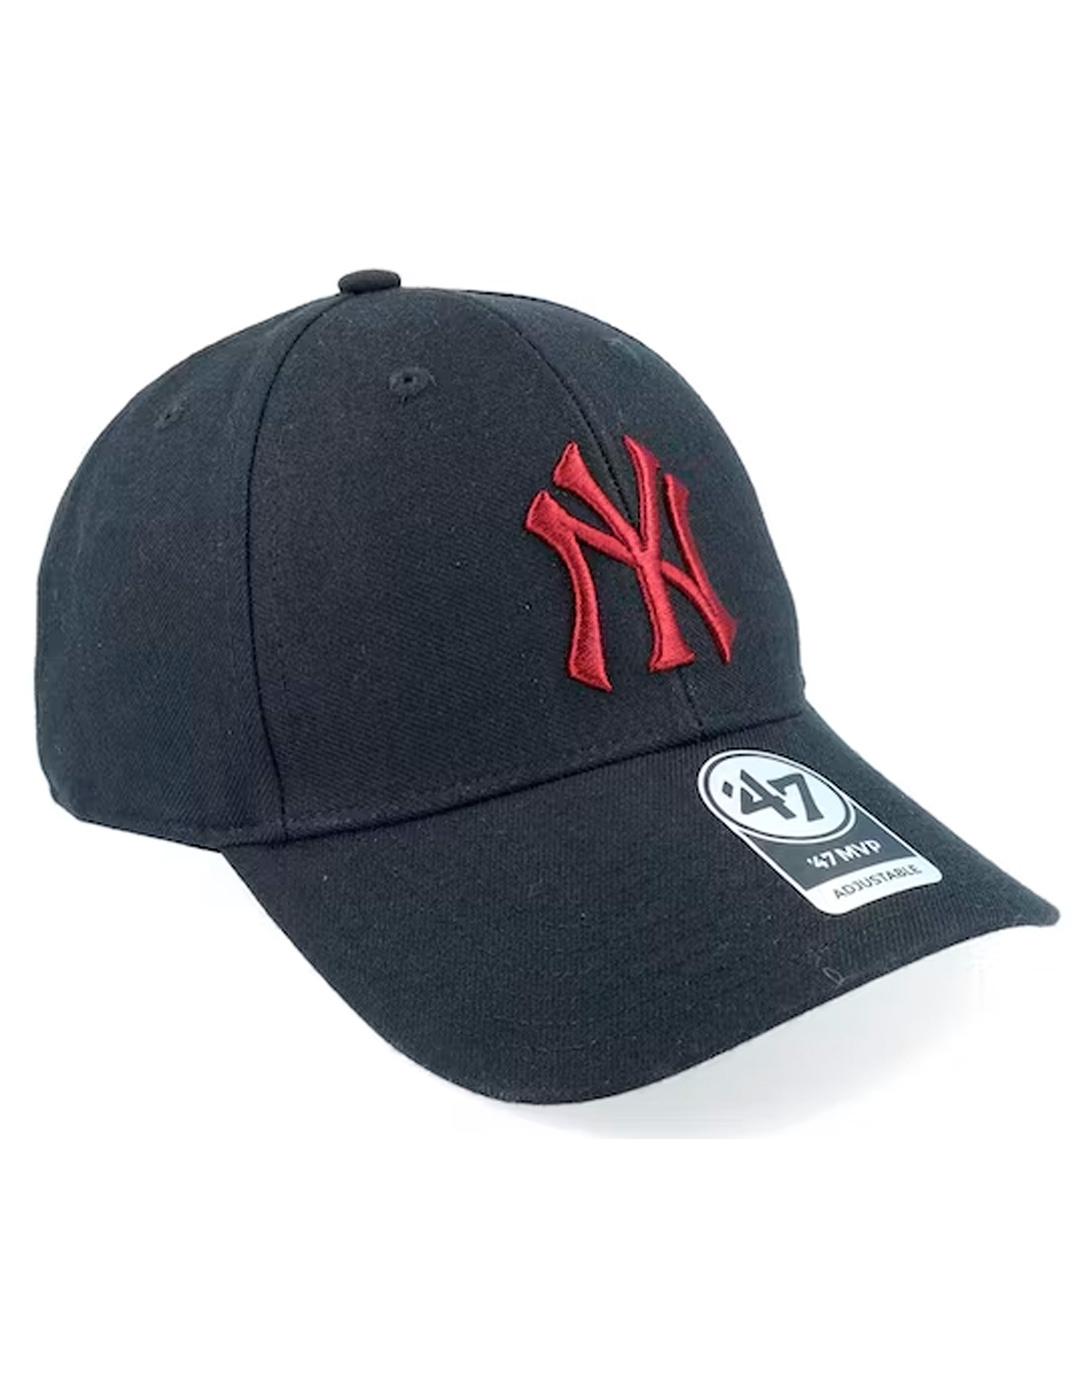 Gorra 47 Brand 'New York Yankees' Negro